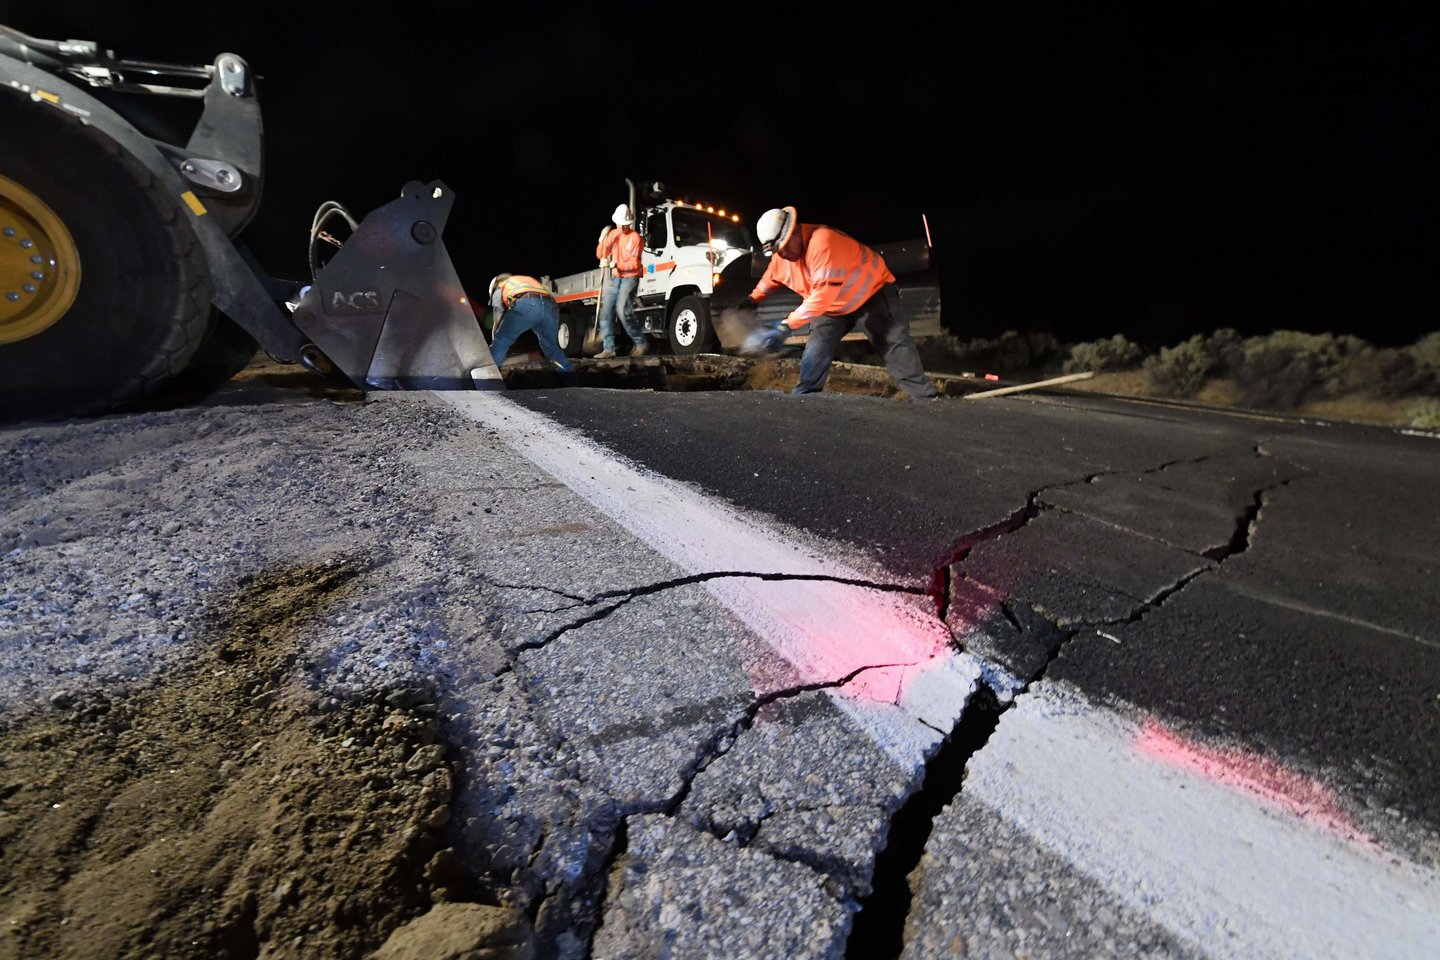  Los Andžele ketvirtadienį prieš auštant užfiksuotas 4,2 balo žemės drebėjimas, tačiau apie didesnę žalą nepranešama.<br> Scanpix/AFP asociatyvi nuotr.